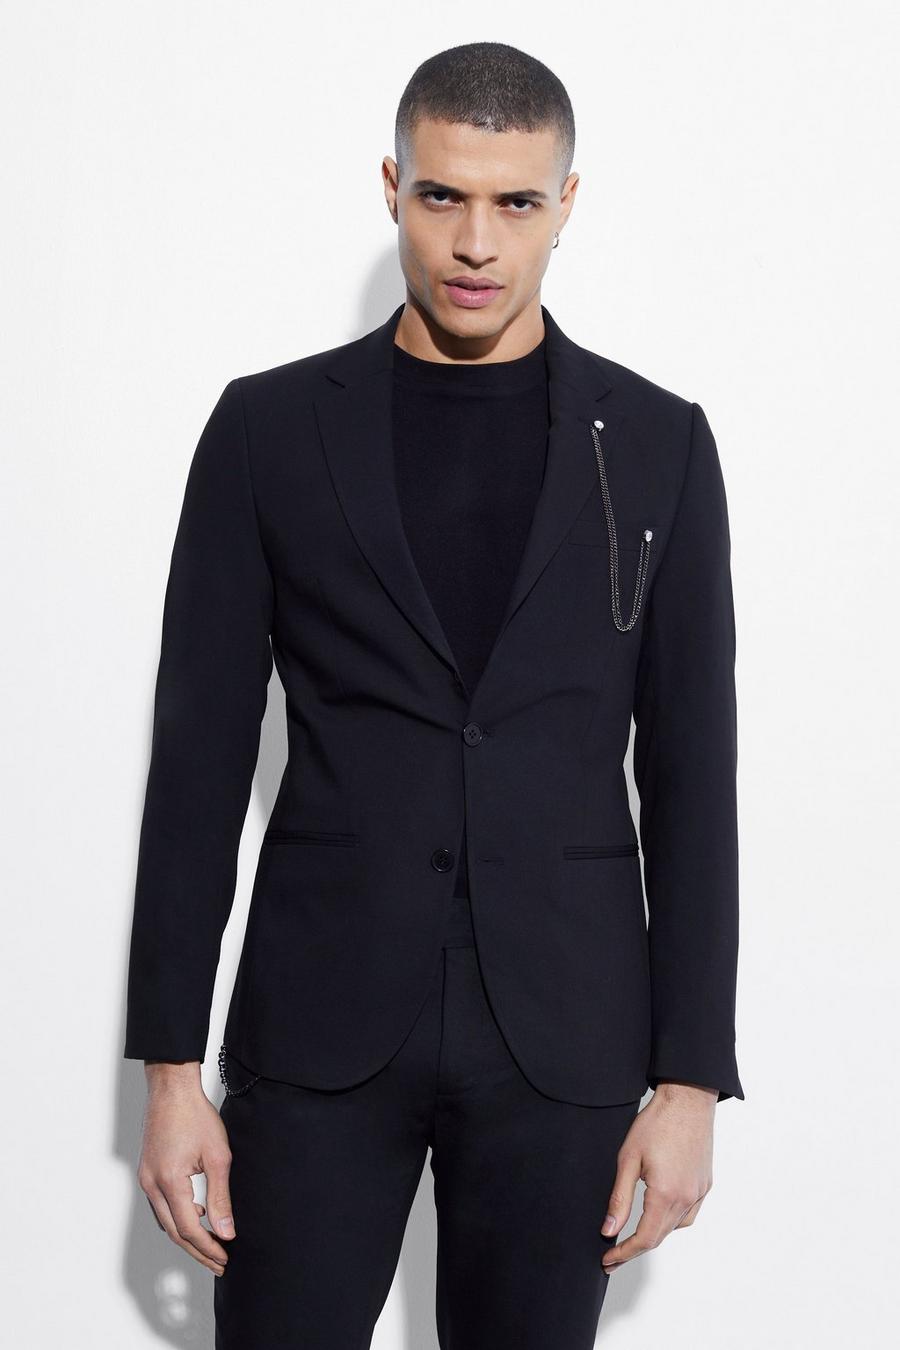 שחור negro ז'קט חליפה בגזרת סקיני עם רכיסה אחת ושרשרת image number 1